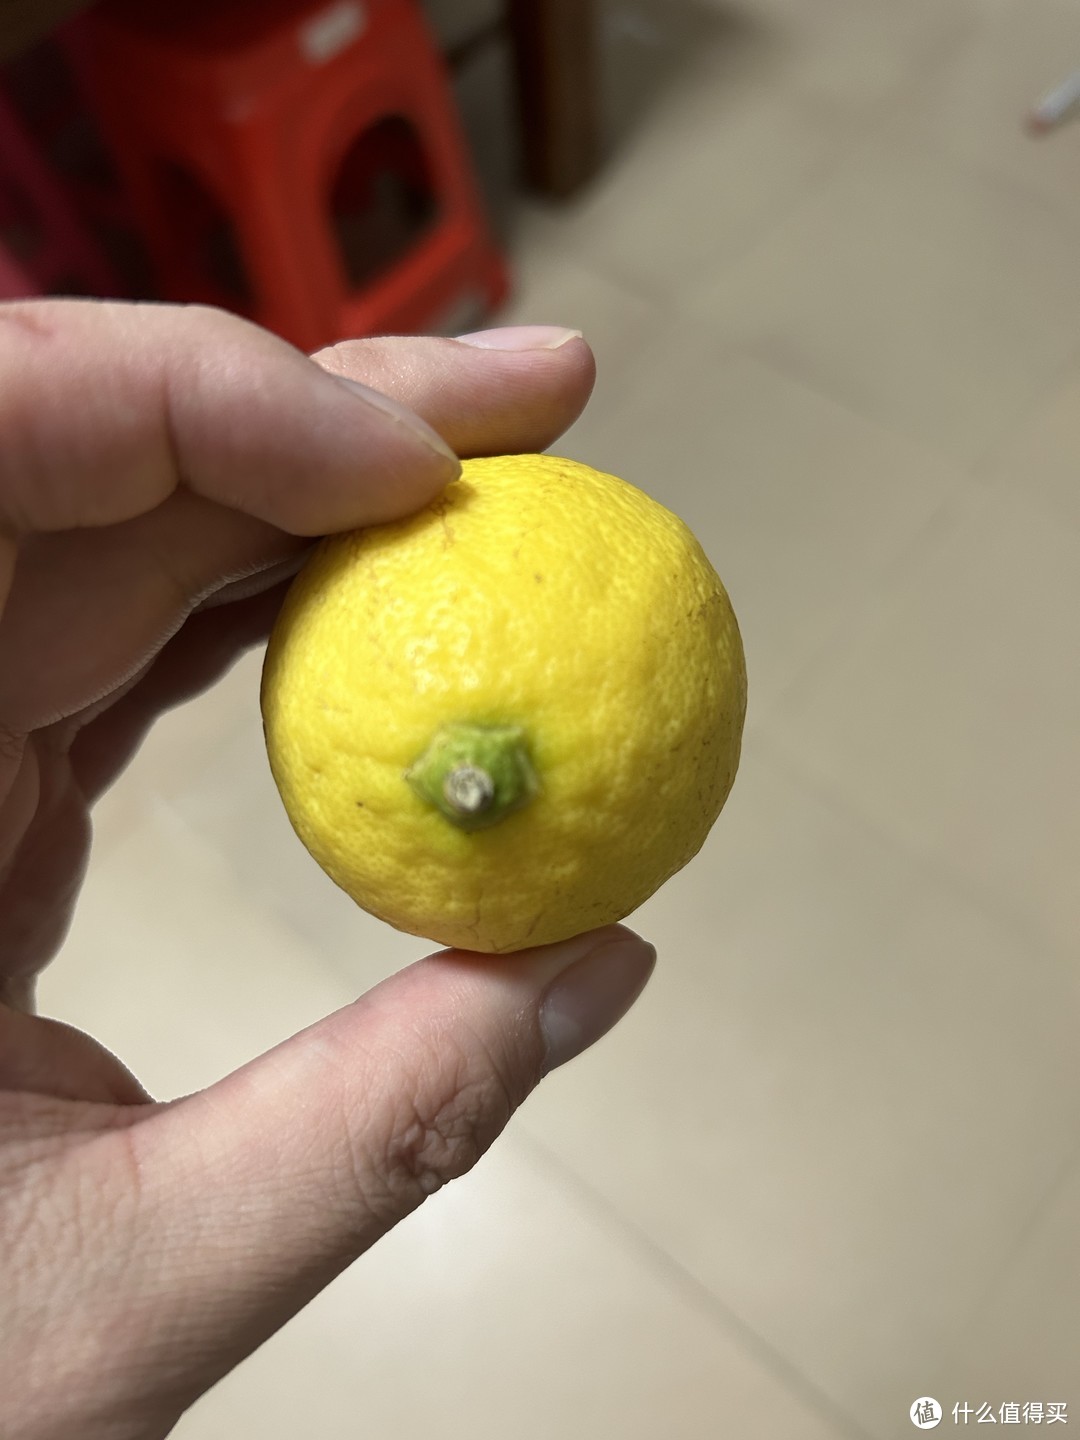 黄柠檬个头特别大。。